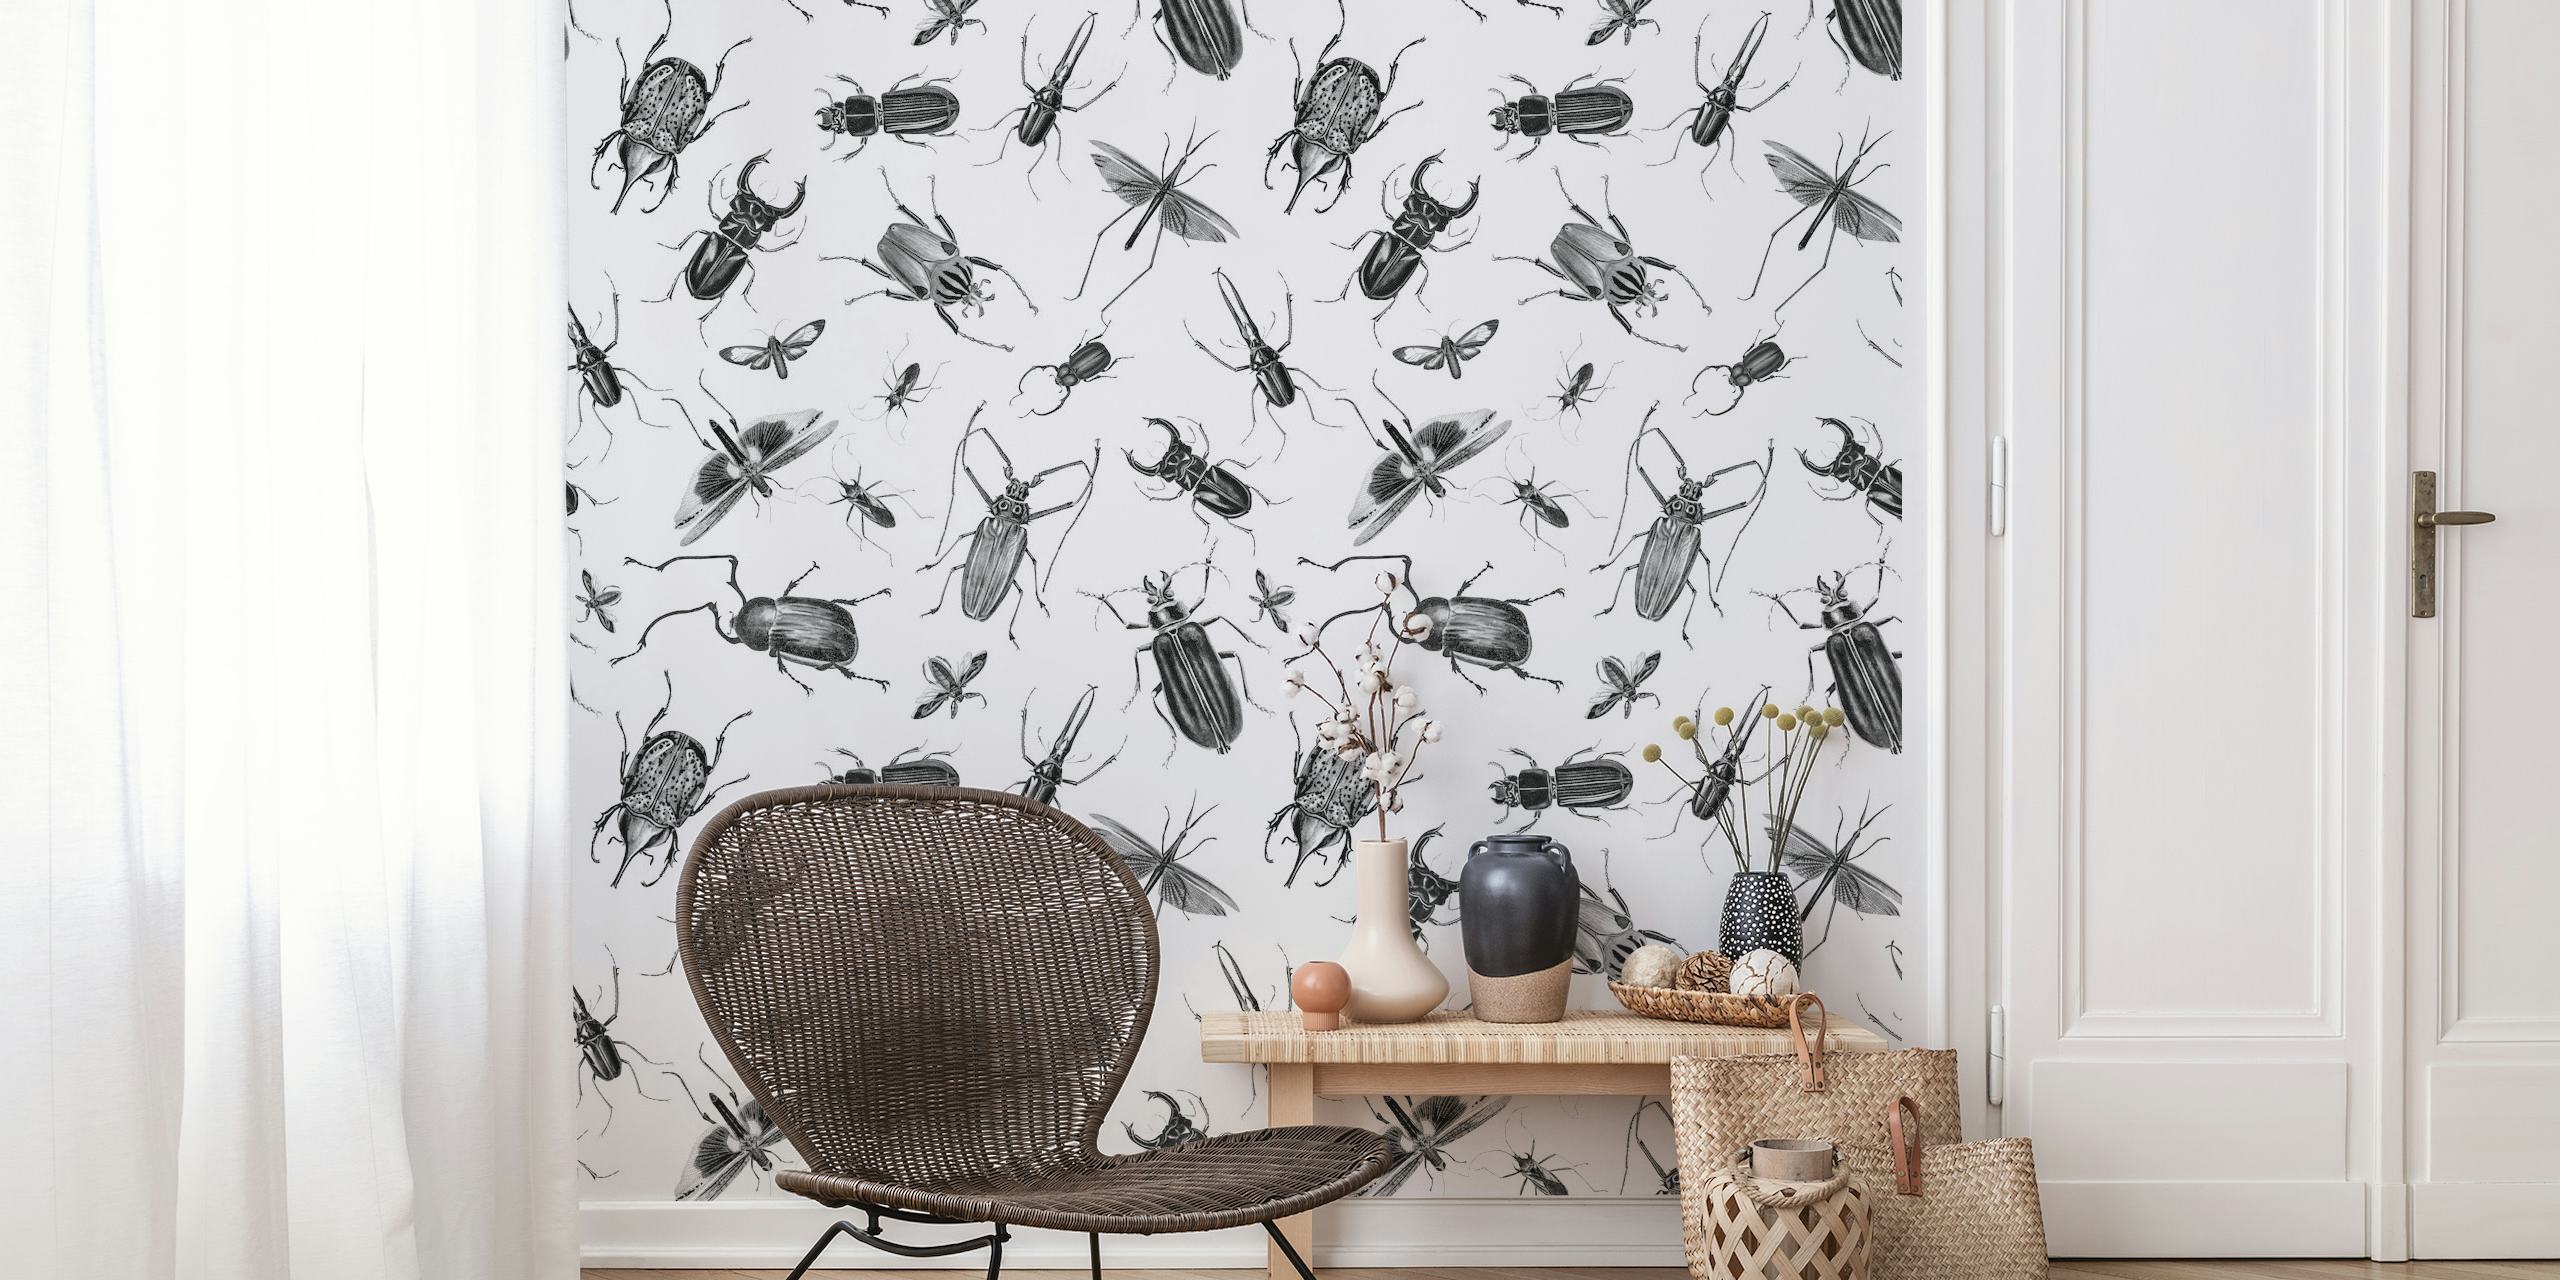 Vintage Beetles And Bugs behang